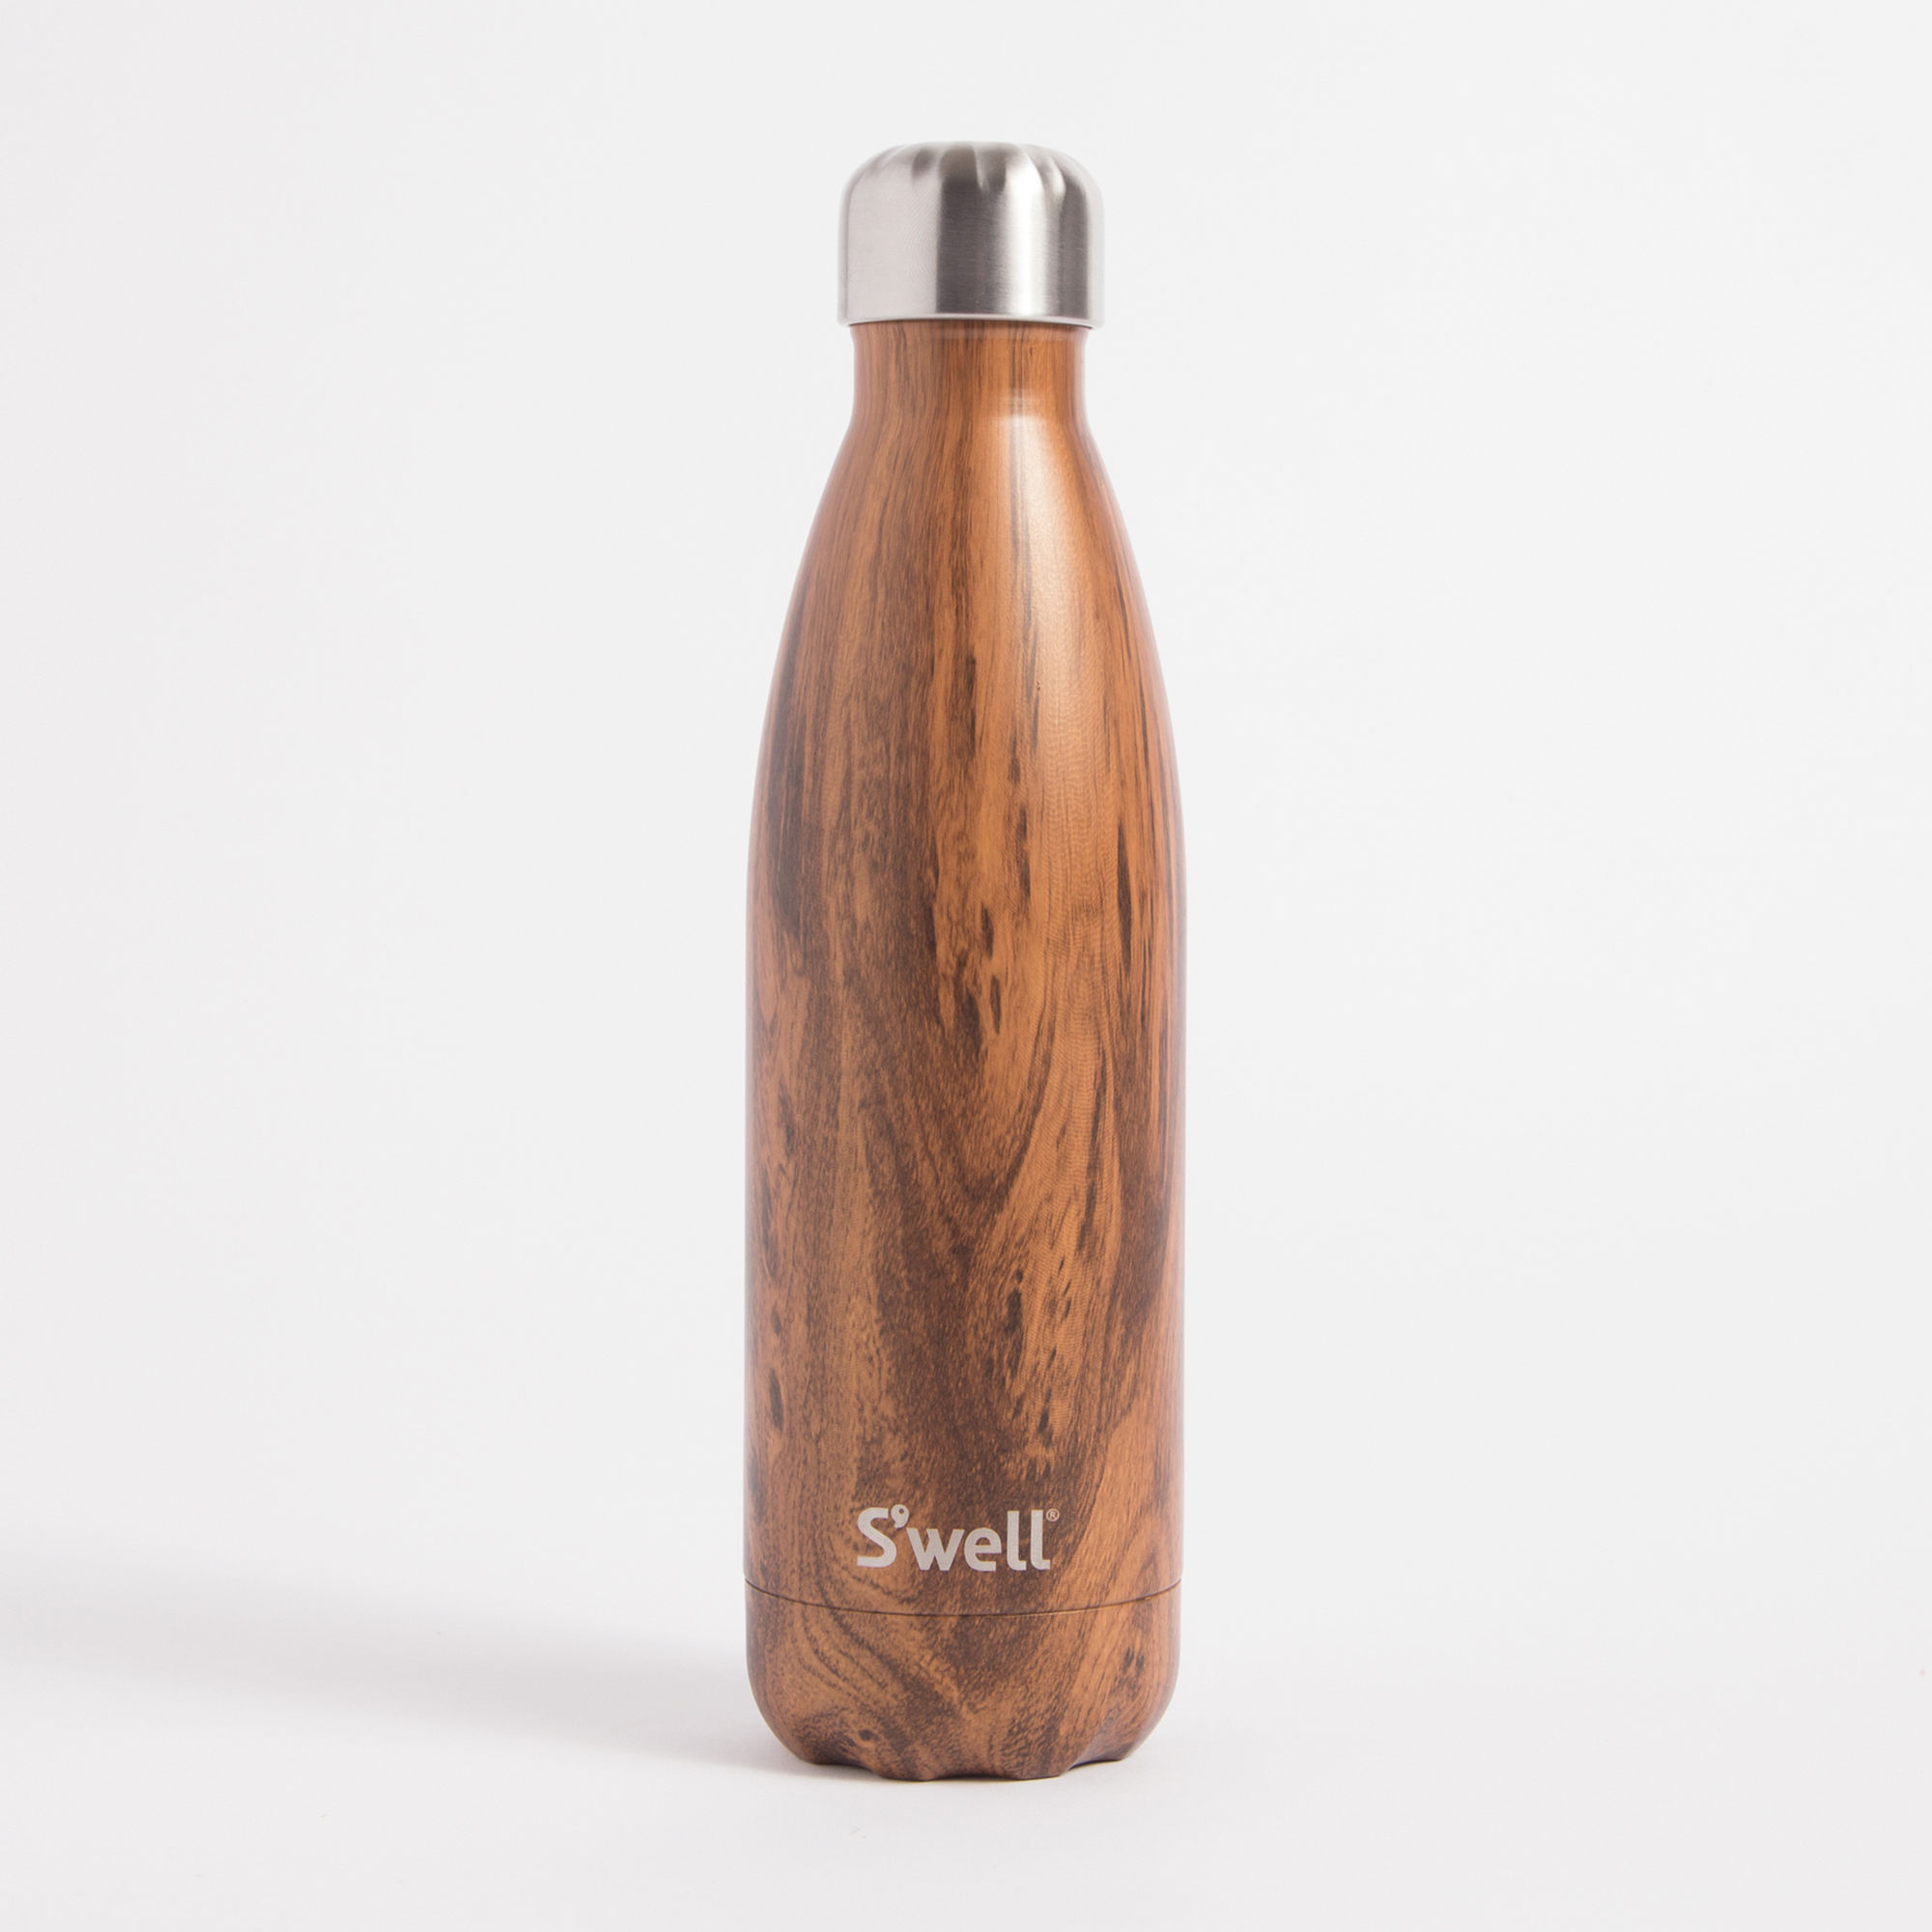 Teekwood Swell bottle